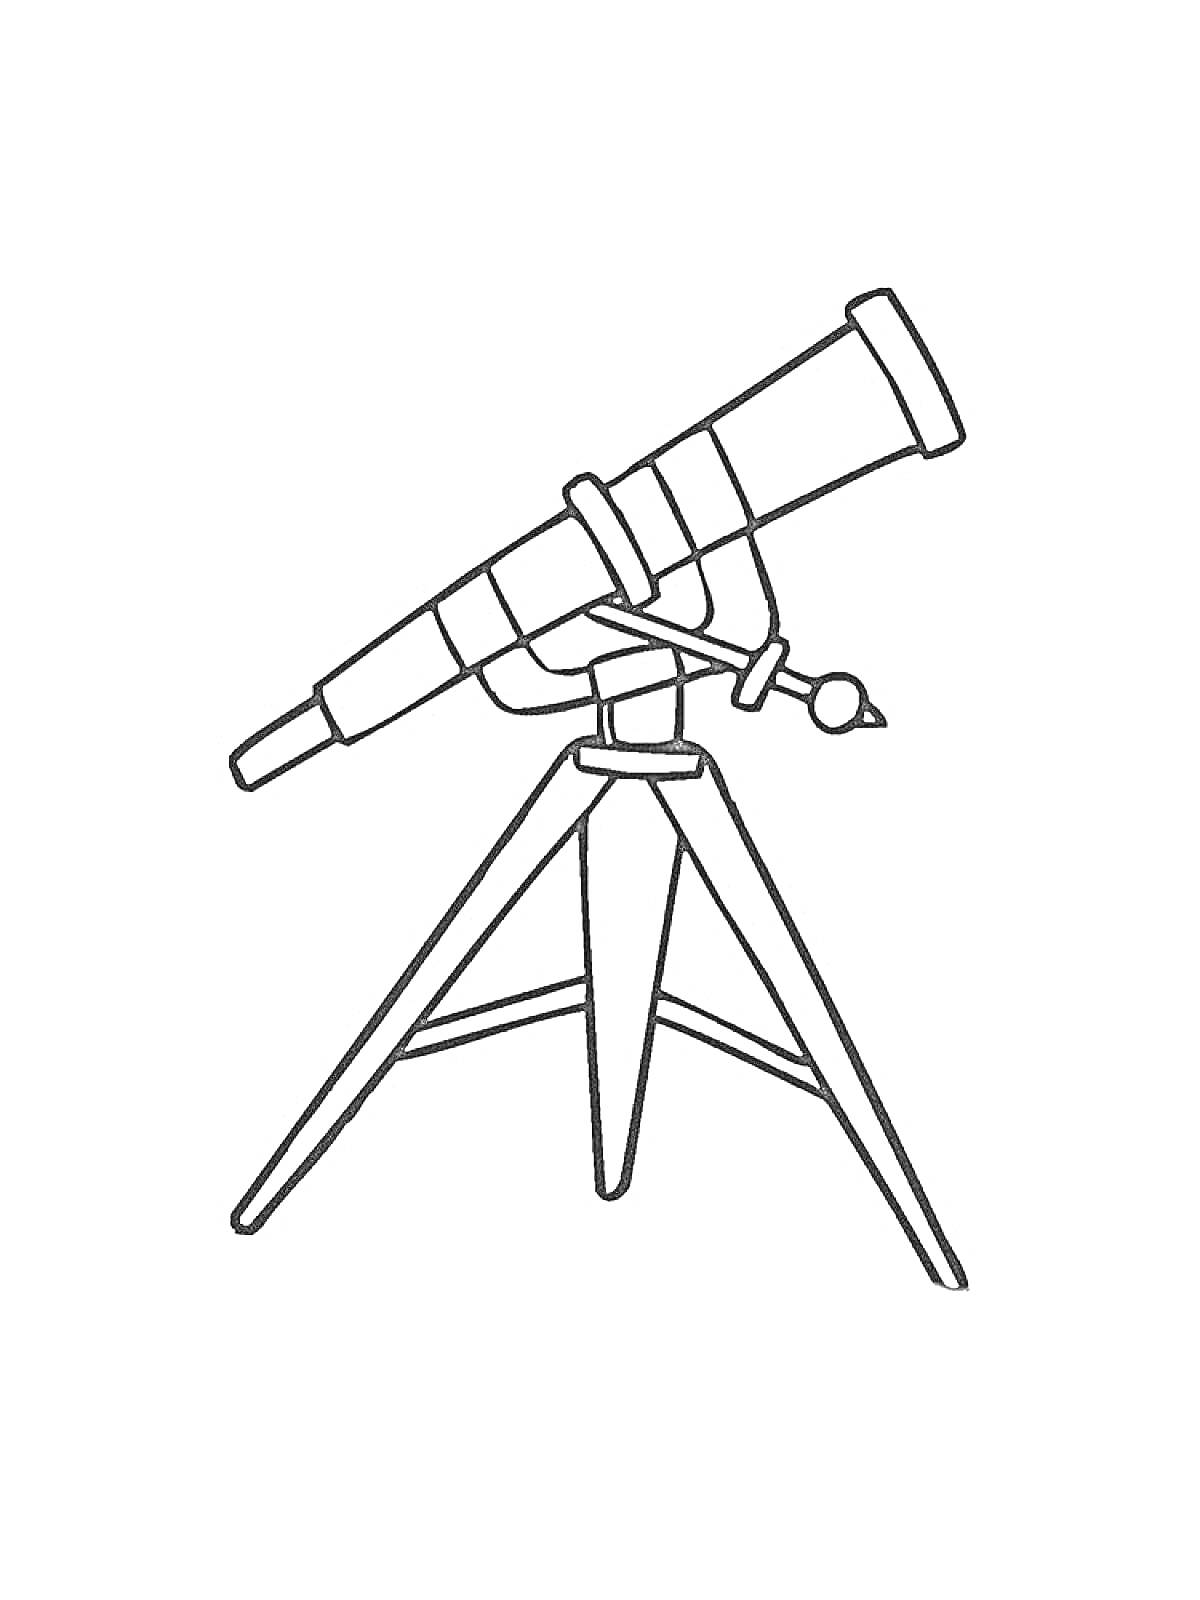 Раскраска Телескоп на треноге с поворотным механизмом